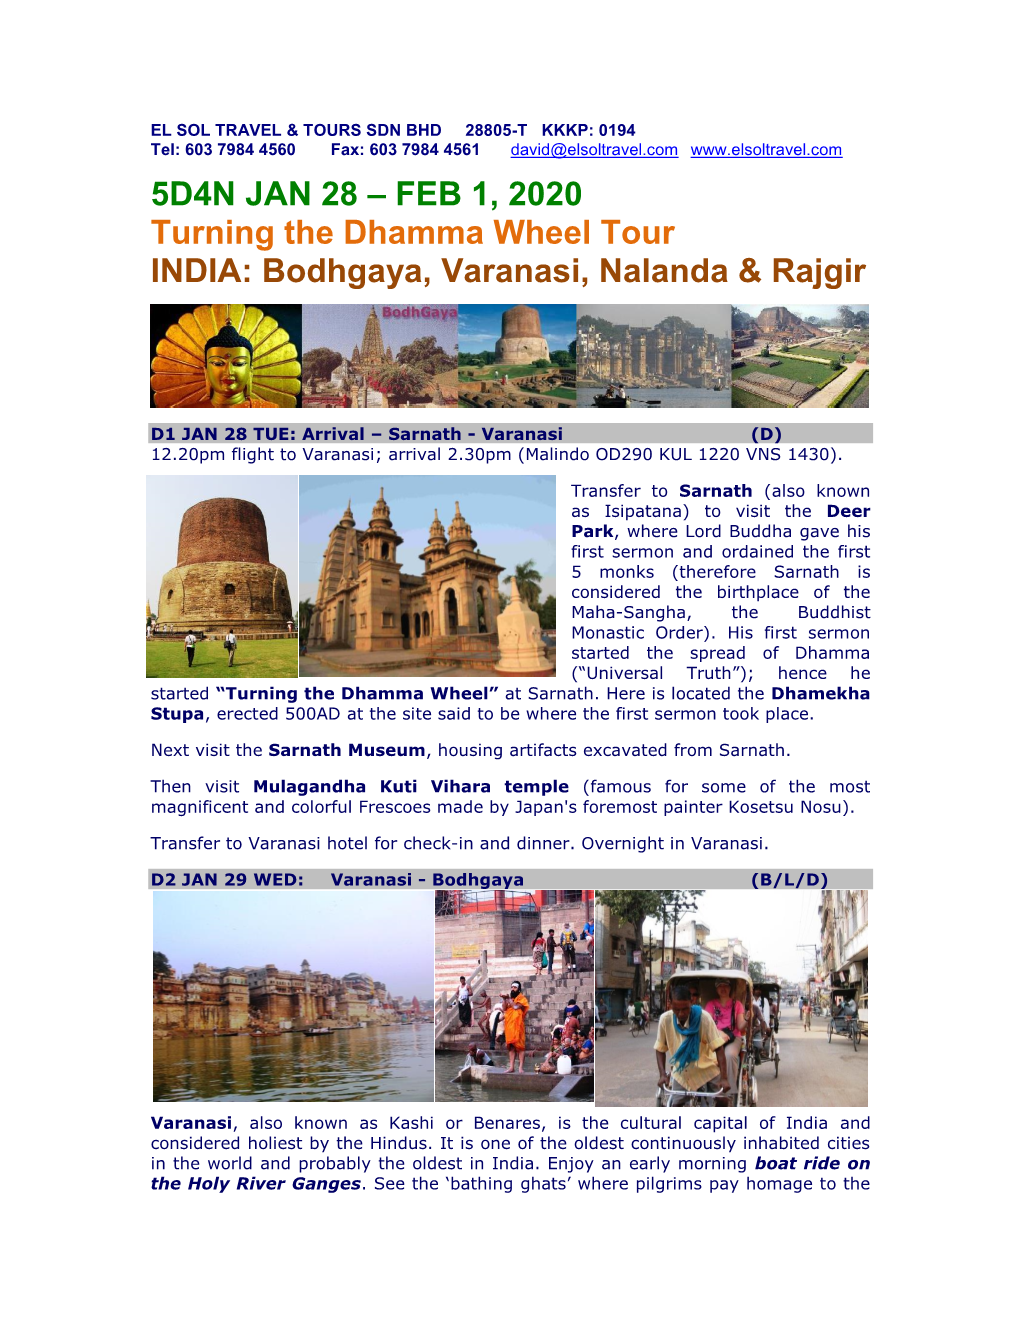 5D4N JAN 28 – FEB 1, 2020 Turning the Dhamma Wheel Tour INDIA: Bodhgaya, Varanasi, Nalanda & Rajgir